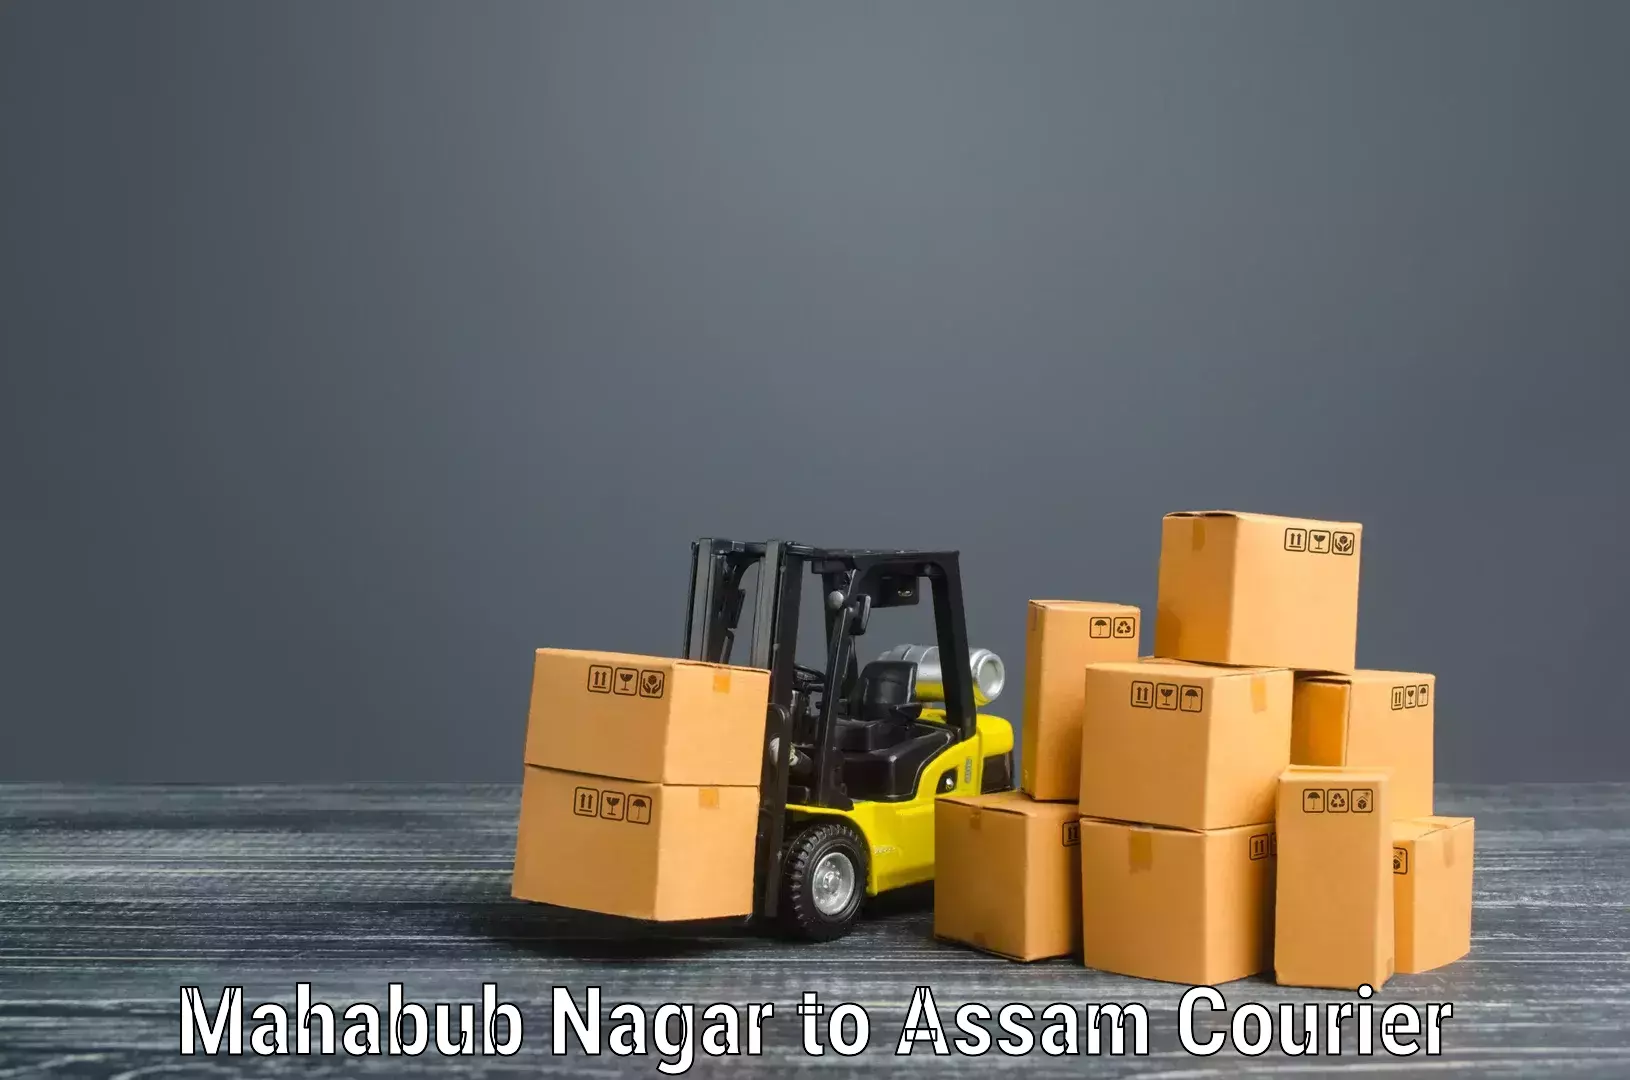 Quality moving company Mahabub Nagar to Pathsala